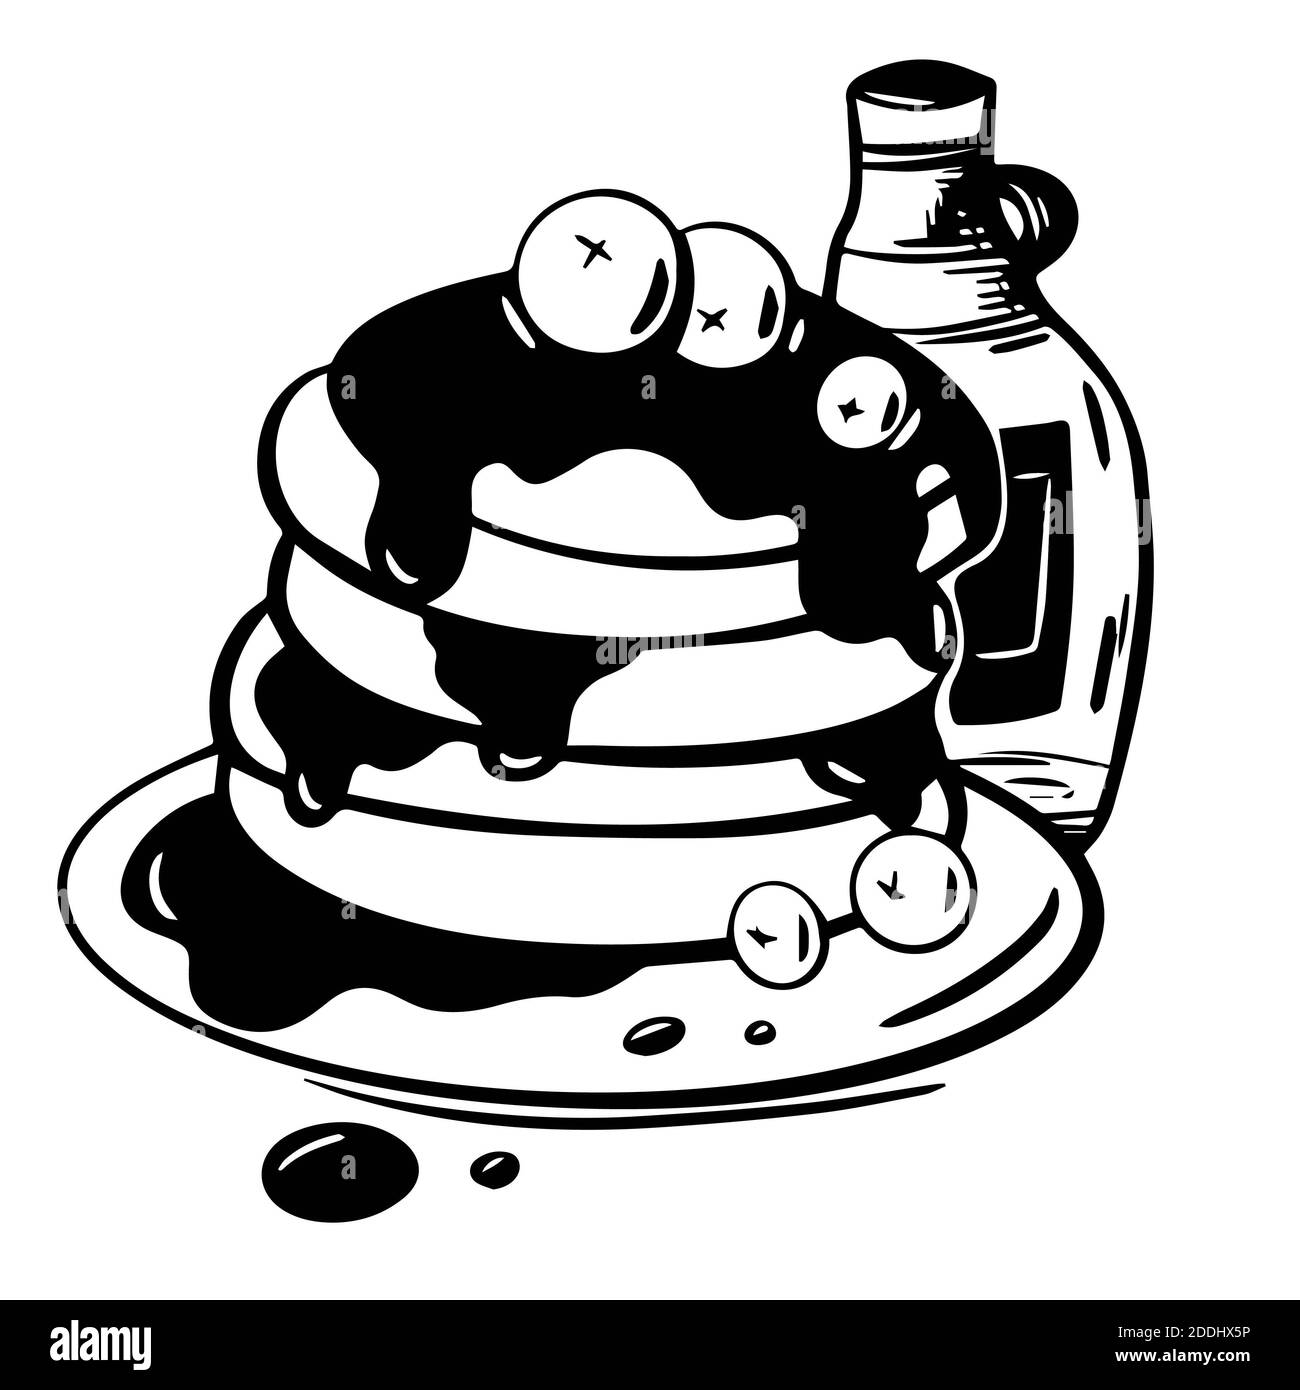 Handgezeichnete Abbildung von Pfannkuchen in Sirup mit Heidelbeeren in Vektor auf weißem Hintergrund. Skizzieren Sie Pfannkuchen isoliert. Illustration für Menü, Café, fo Stockfoto